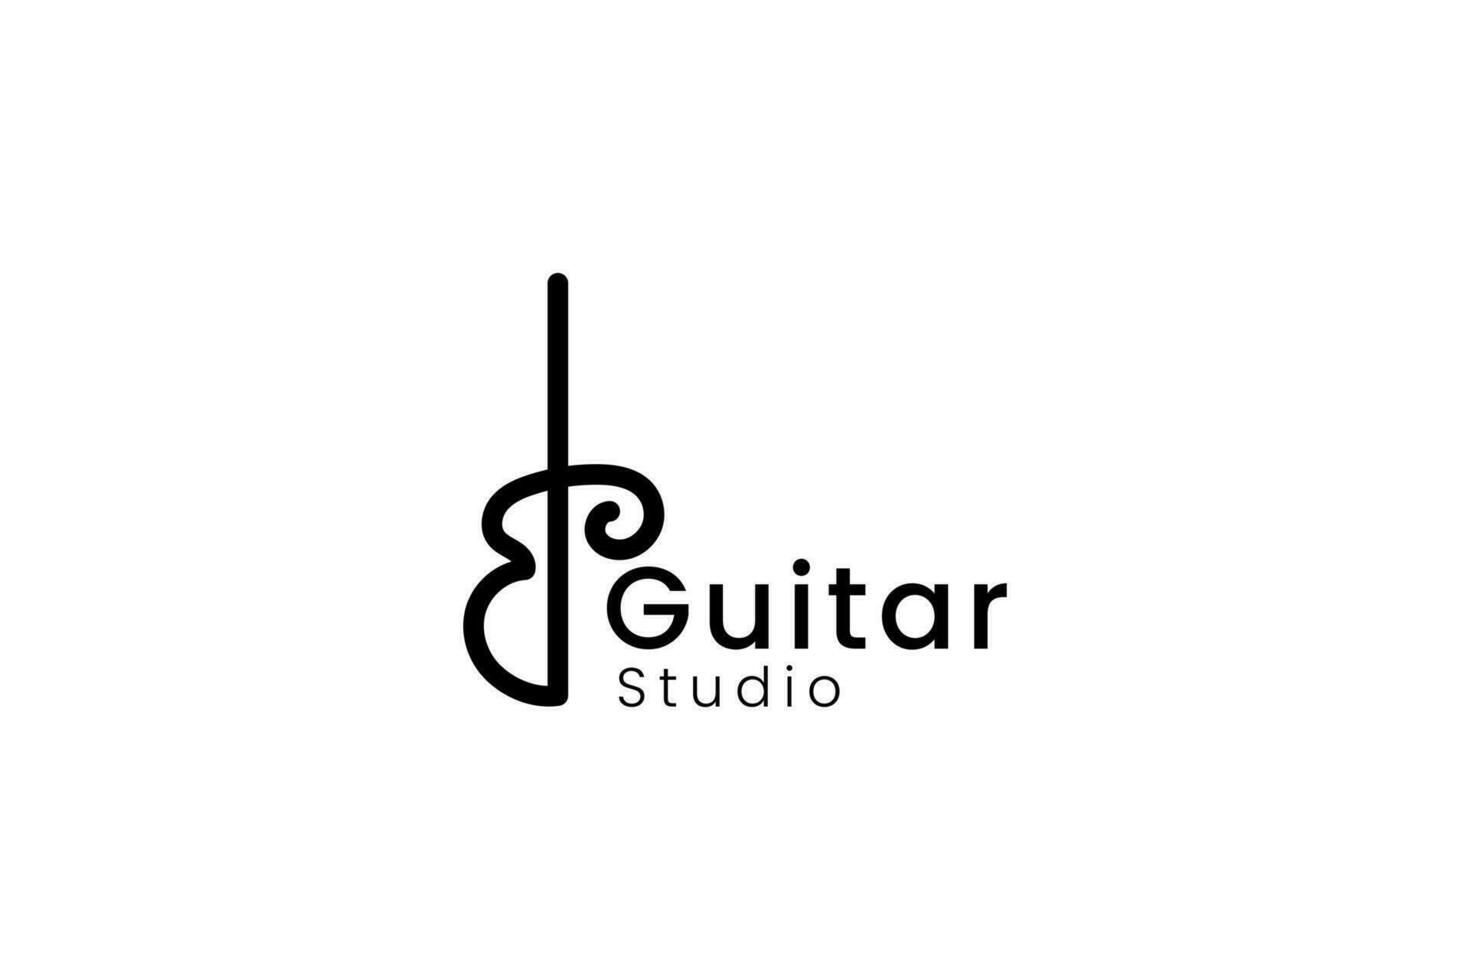 guitarra logo vector icono ilustración